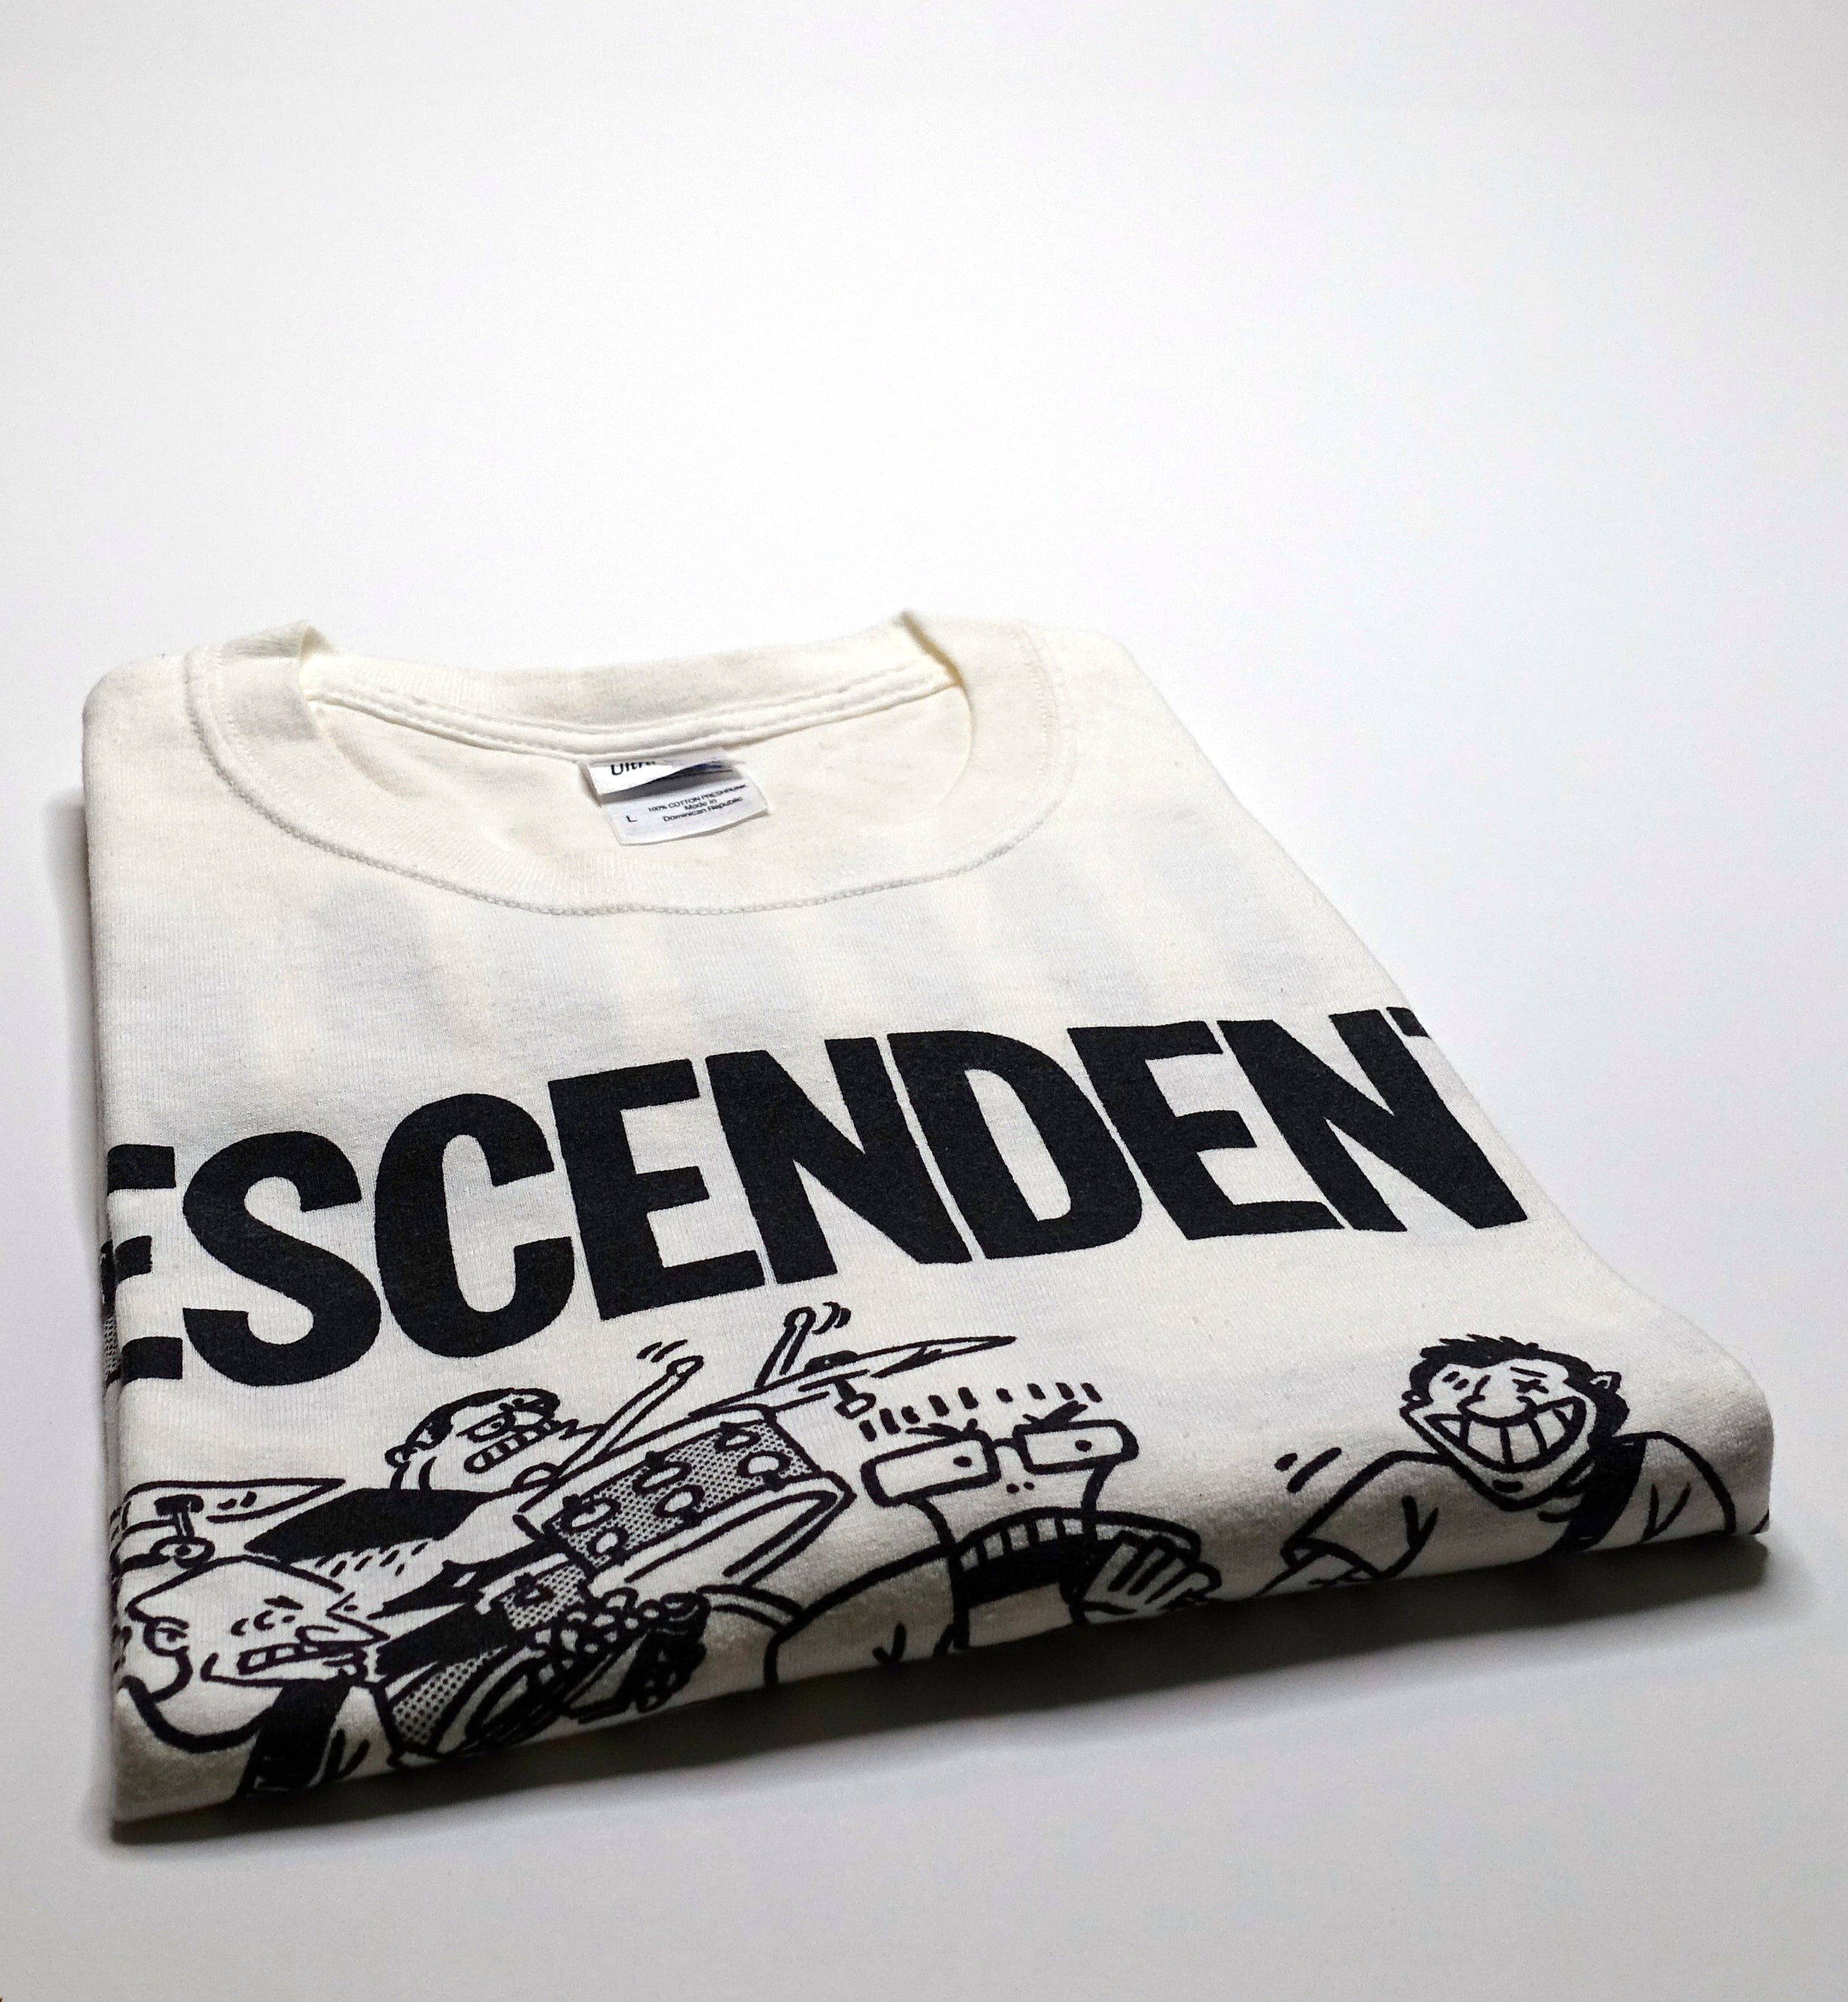 Descendents - Japan 2012 Tour Shirt Size Large